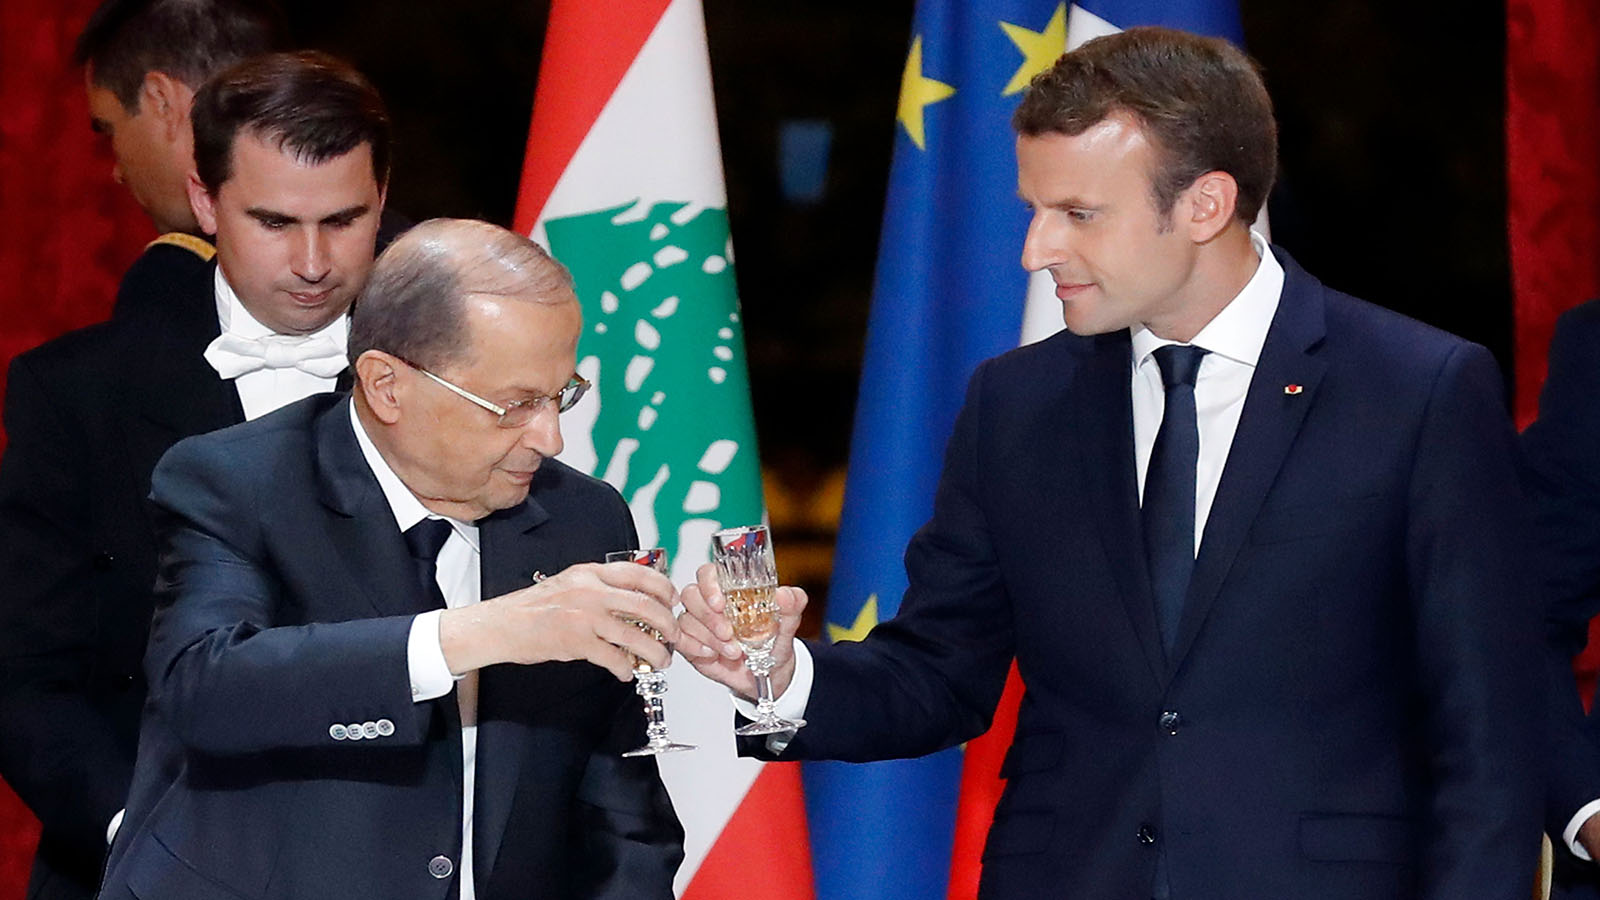 لبنان بوابة فرنسا الشرق الأوسطية بالتنسيق مع حزب الله